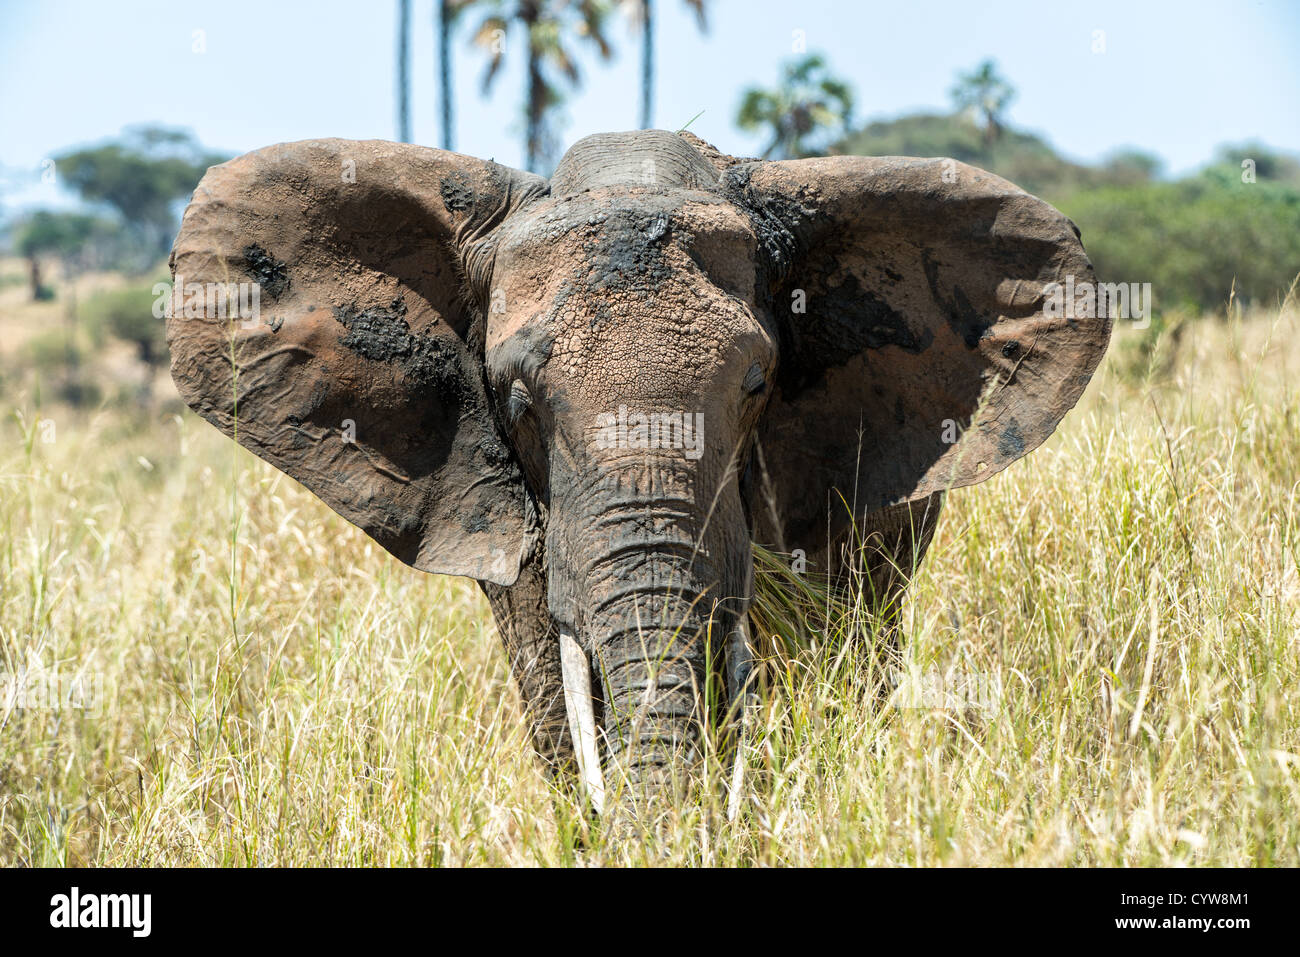 TARANGIRE-NATIONALPARK, Tansania - Ein einsamer Elefant im Tarangire-Nationalpark im Norden Tansanias, nicht weit vom Ngorongoro-Krater und der Serengeti. Der Ngorongoro-Krater, der zum UNESCO-Weltkulturerbe gehört, ist ein riesiger vulkanischer Krater im Norden Tansanias. Sie wurde vor 2-3 Millionen Jahren gegründet, hat einen Durchmesser von etwa 20 Kilometern und ist die Heimat vielfältiger Tiere, einschließlich der „Big Five“-Wildtiere. Das Ngorongoro Conservation Area, bewohnt von den Maasai, enthält auch bedeutende archäologische Stätten wie die Olduvai-Schlucht und Laetoli, die Einblicke in die frühe menschliche Evolution bieten. Stockfoto